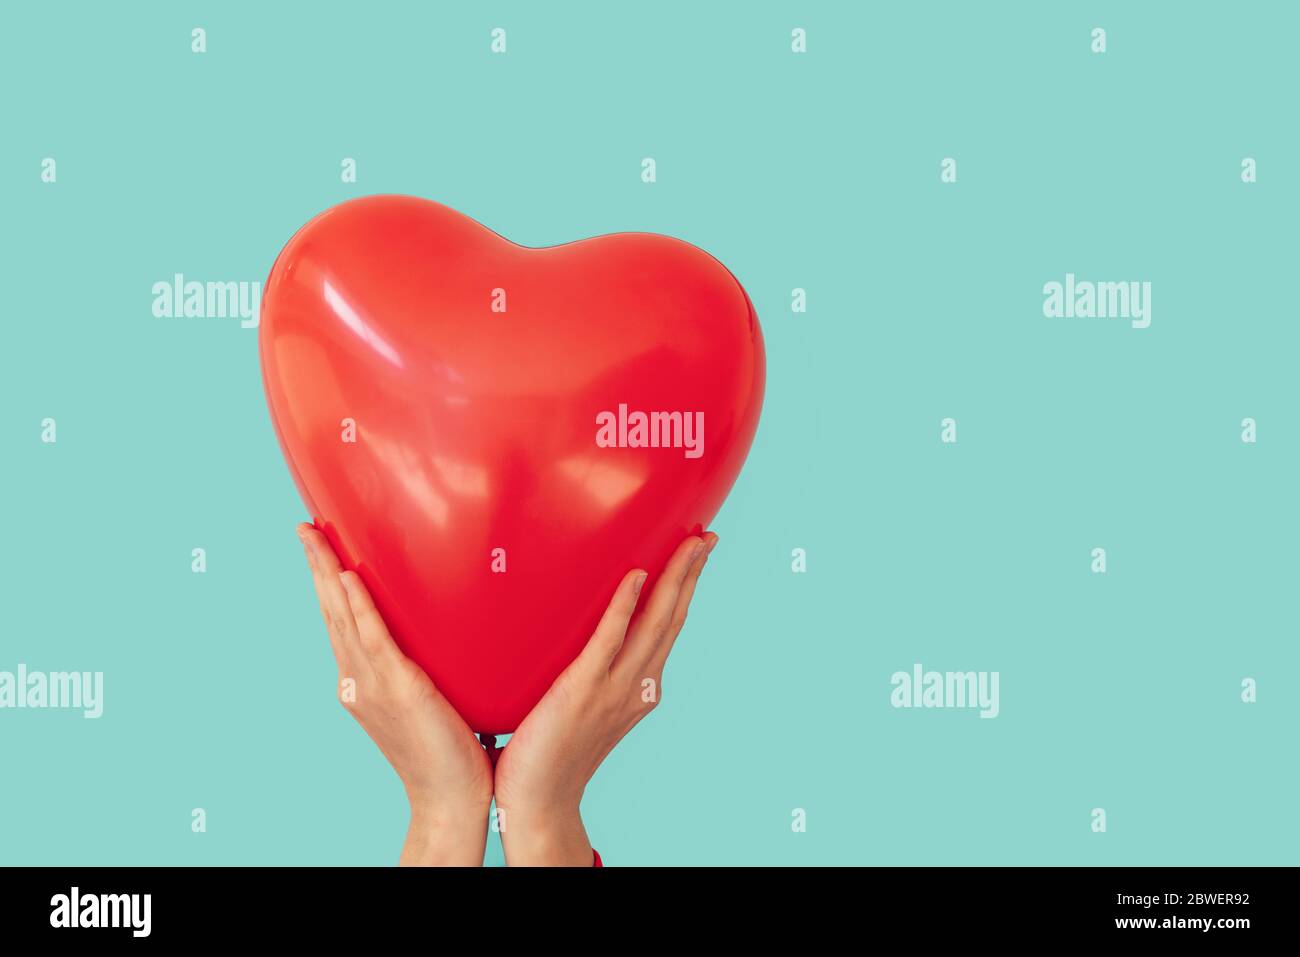 Donna sta tenendo rosso cuore a forma di palloncino su uno sfondo turchese parete. Concetto di San Valentino e romanticismo Foto Stock